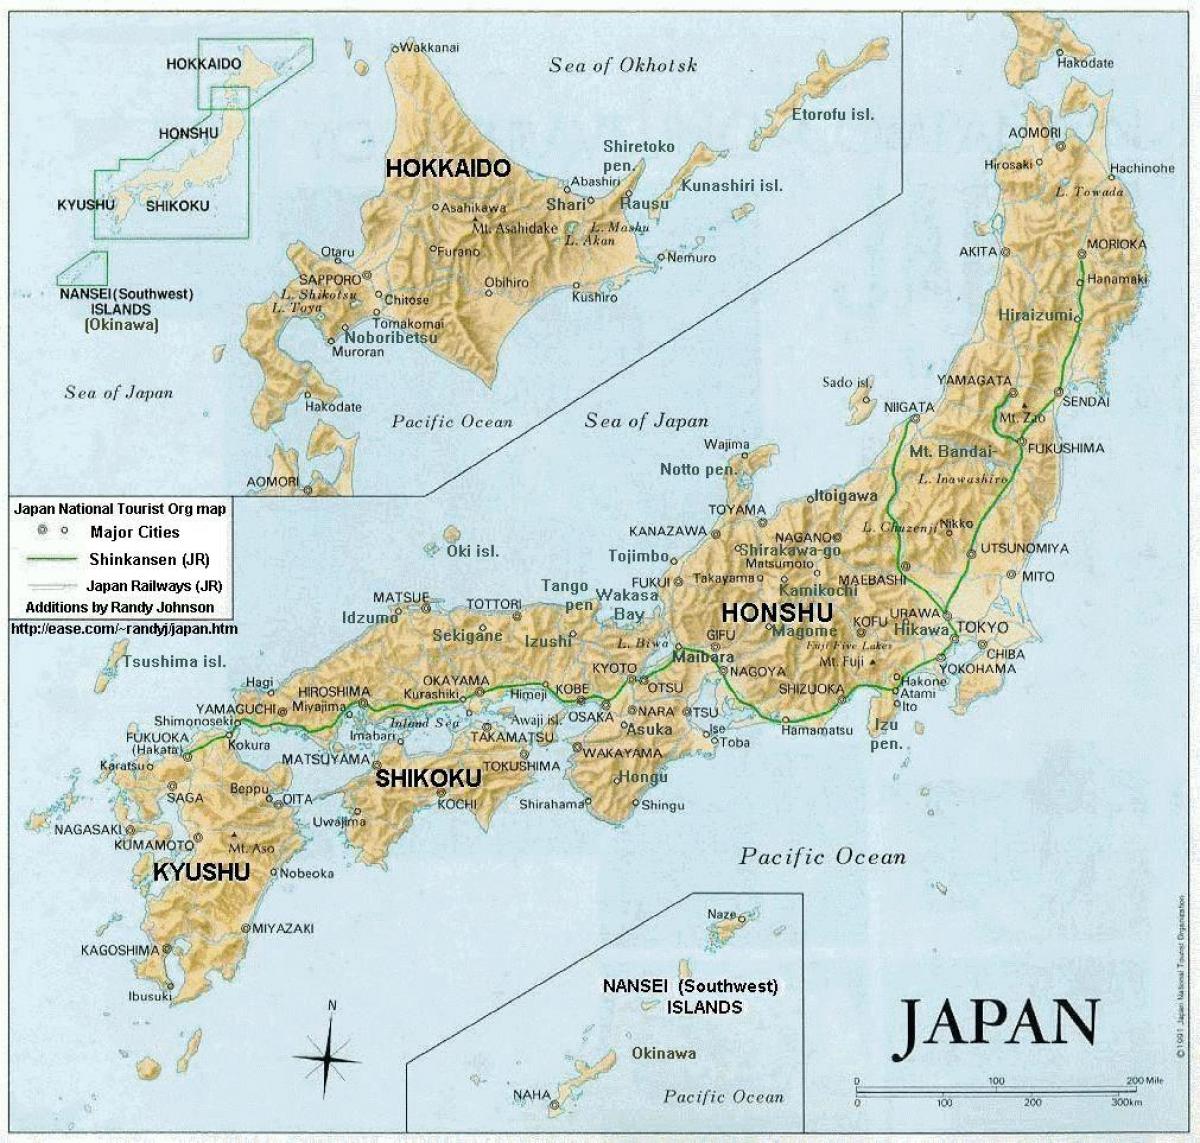 日本地図島都市 日本地図に都市や諸島 東アジア アジア